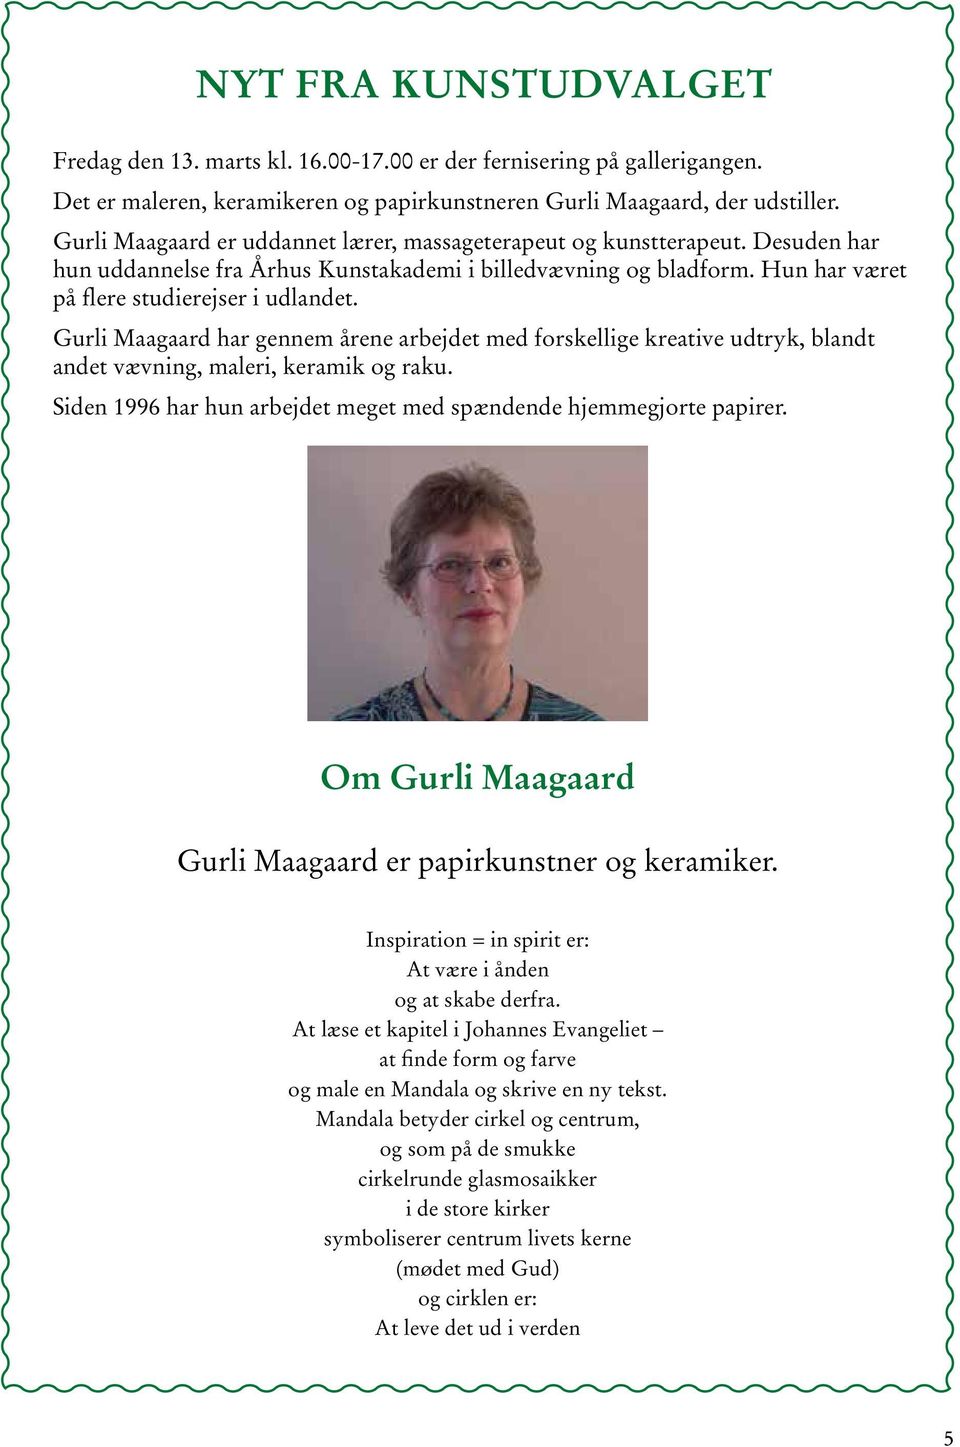 Gurli Maagaard har gennem årene arbejdet med forskellige kreative udtryk, blandt andet vævning, maleri, keramik og raku. Siden 1996 har hun arbejdet meget med spændende hjemmegjorte papirer.